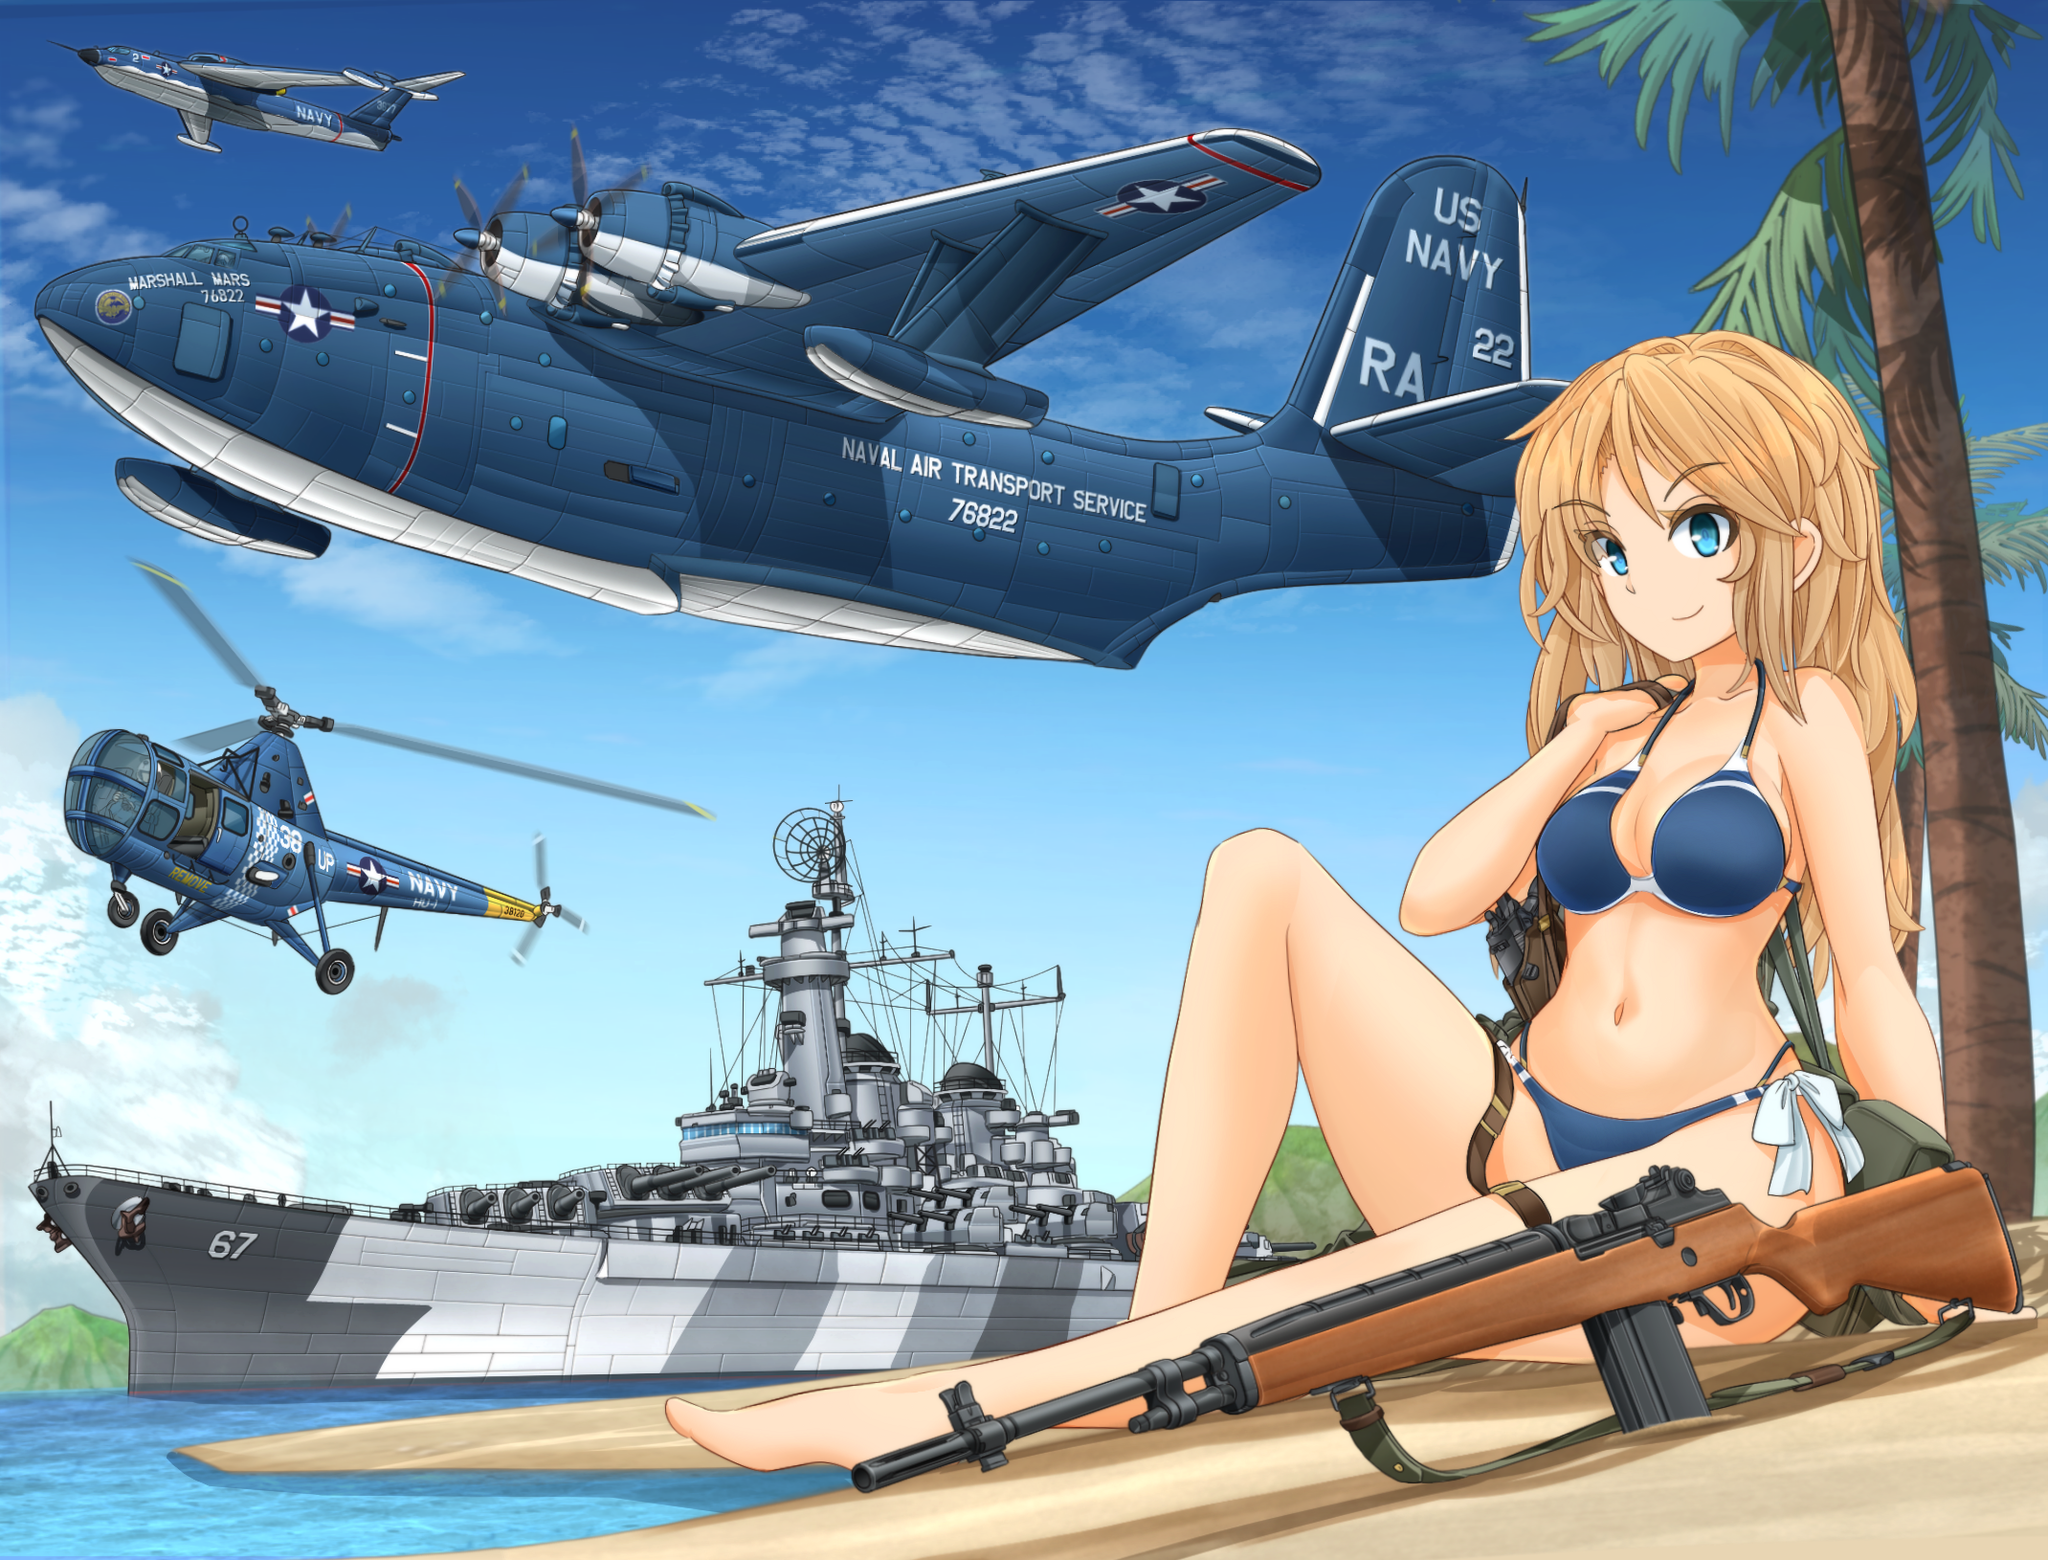 US Navy - Anime, Anime original, Anime art, US Navy, Flying boat, Battleship, Sikorsky, M14, , Swimsuit, Bikini